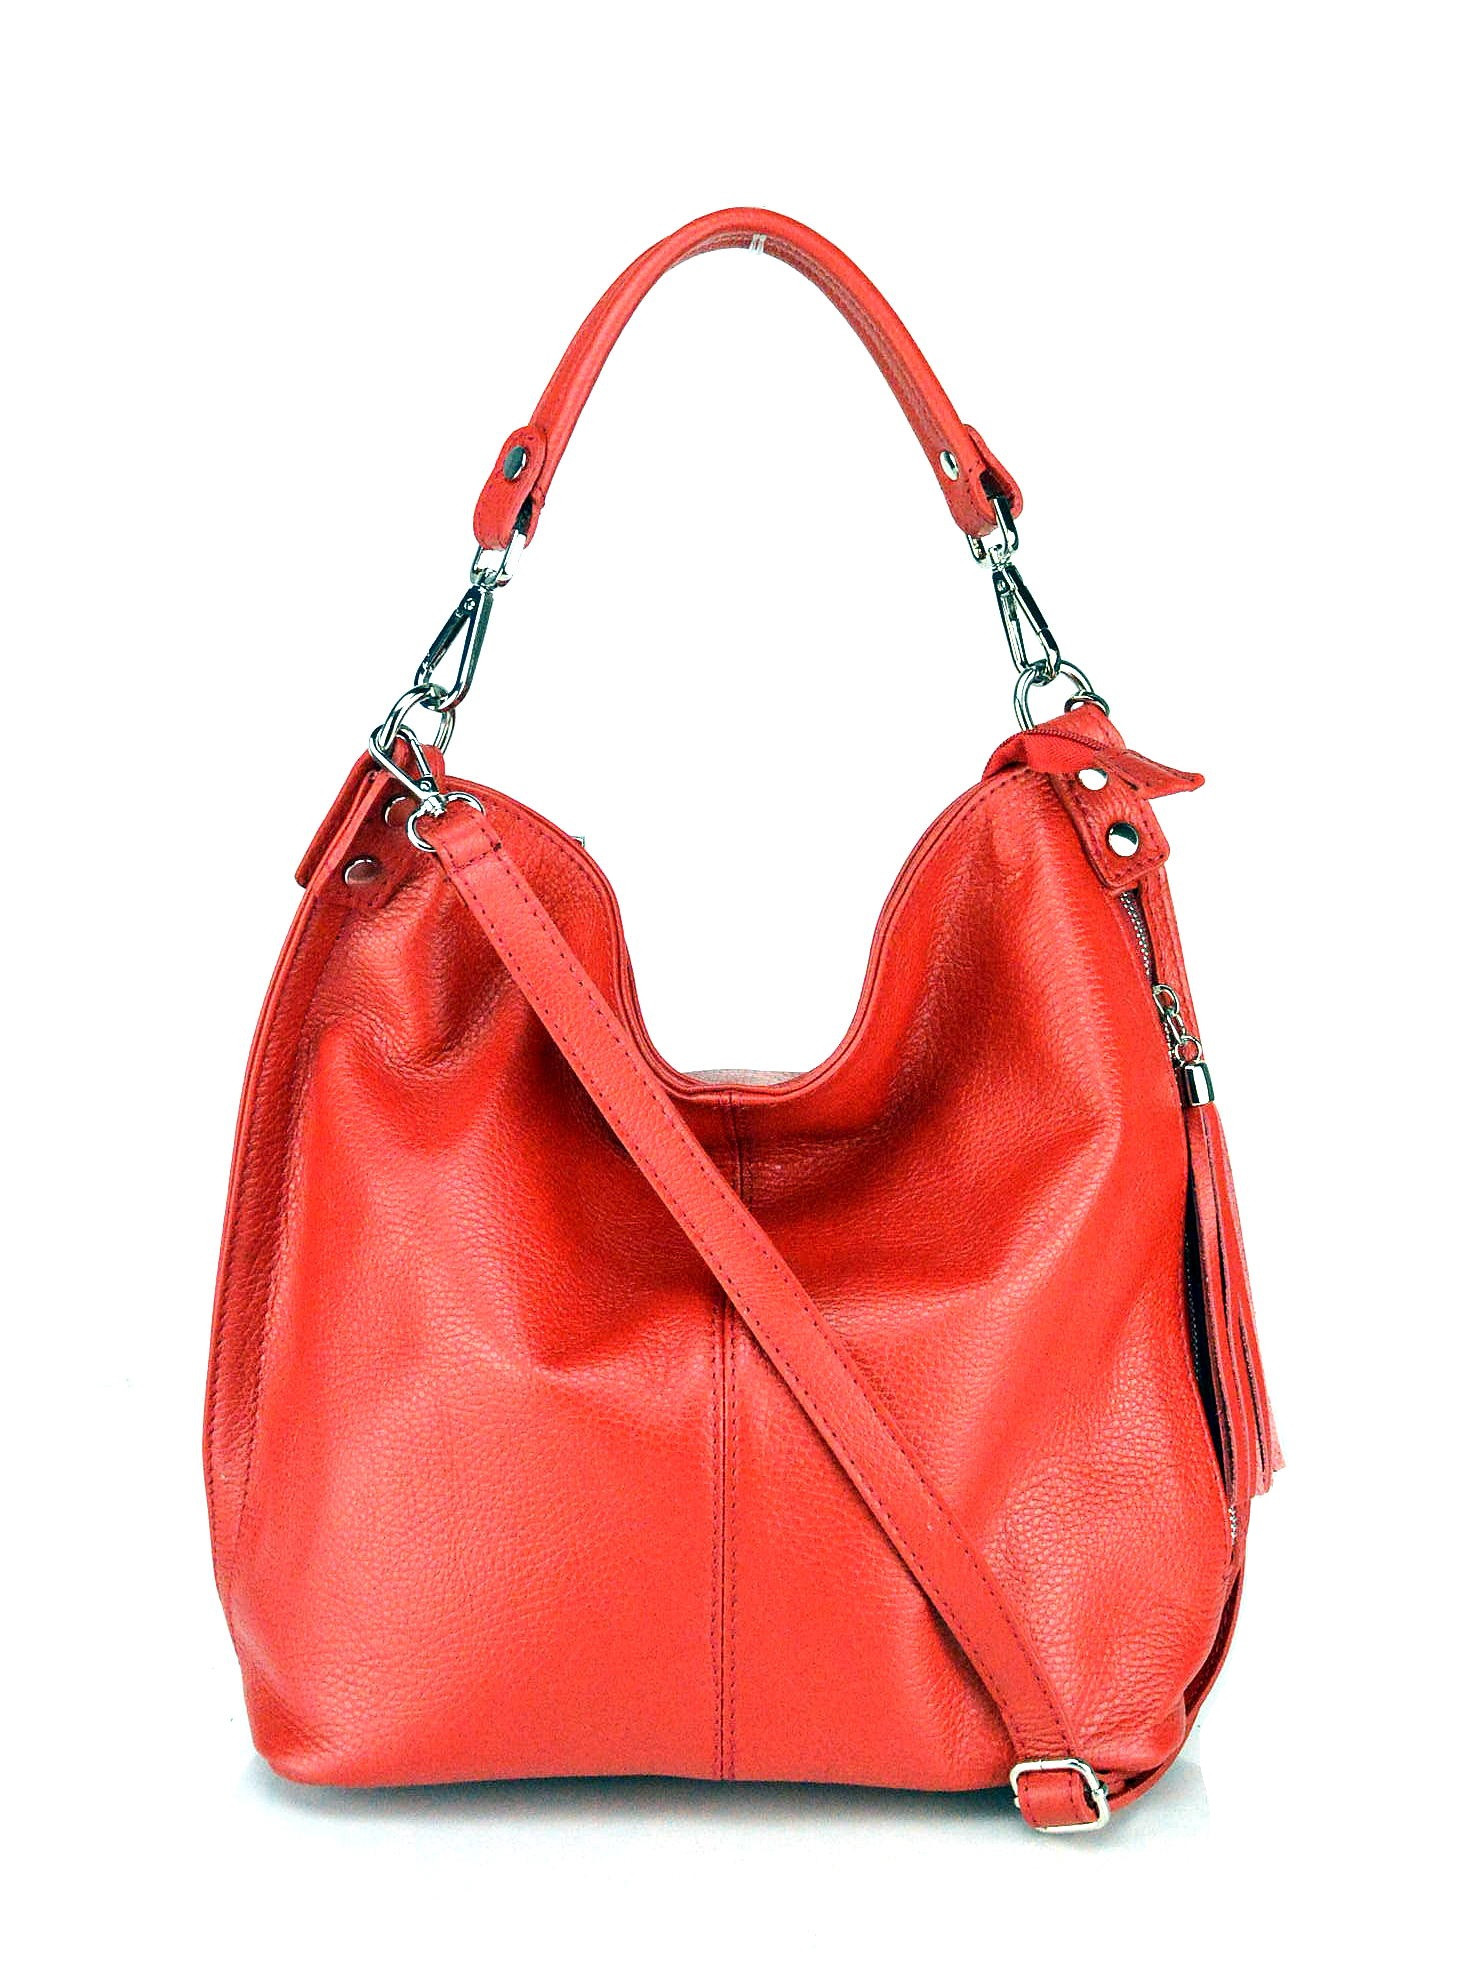 Větší luxusní tmavě červená kožená kabelka přes rameno Denice Two